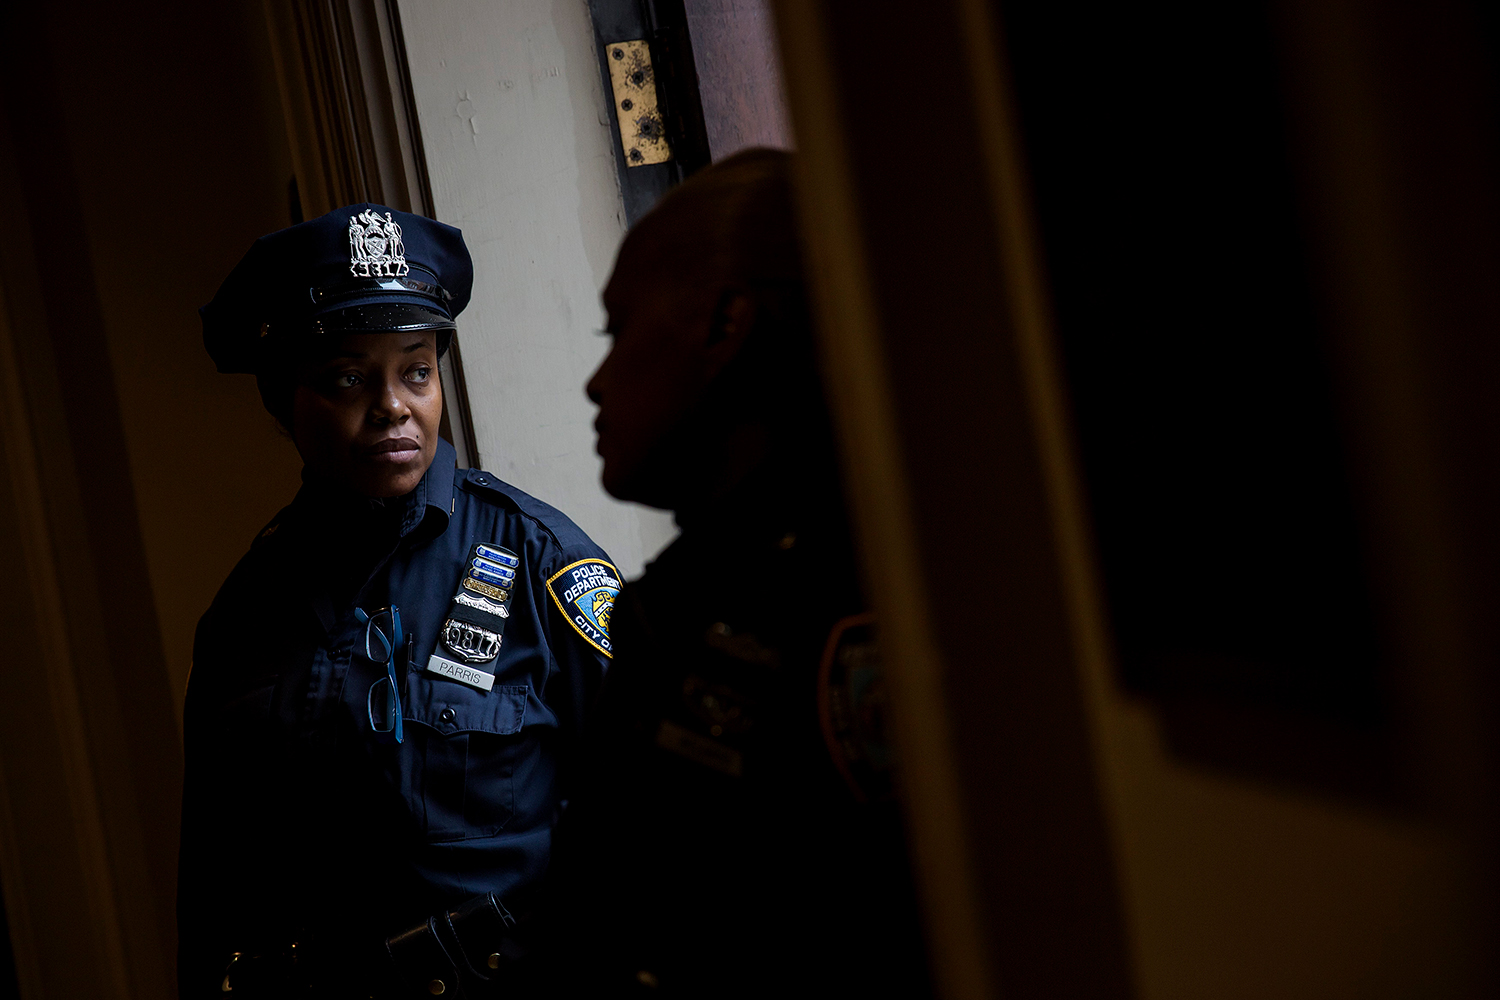 La policía de Nueva York busca a cinco hombres que violaron a una chica de 18 años